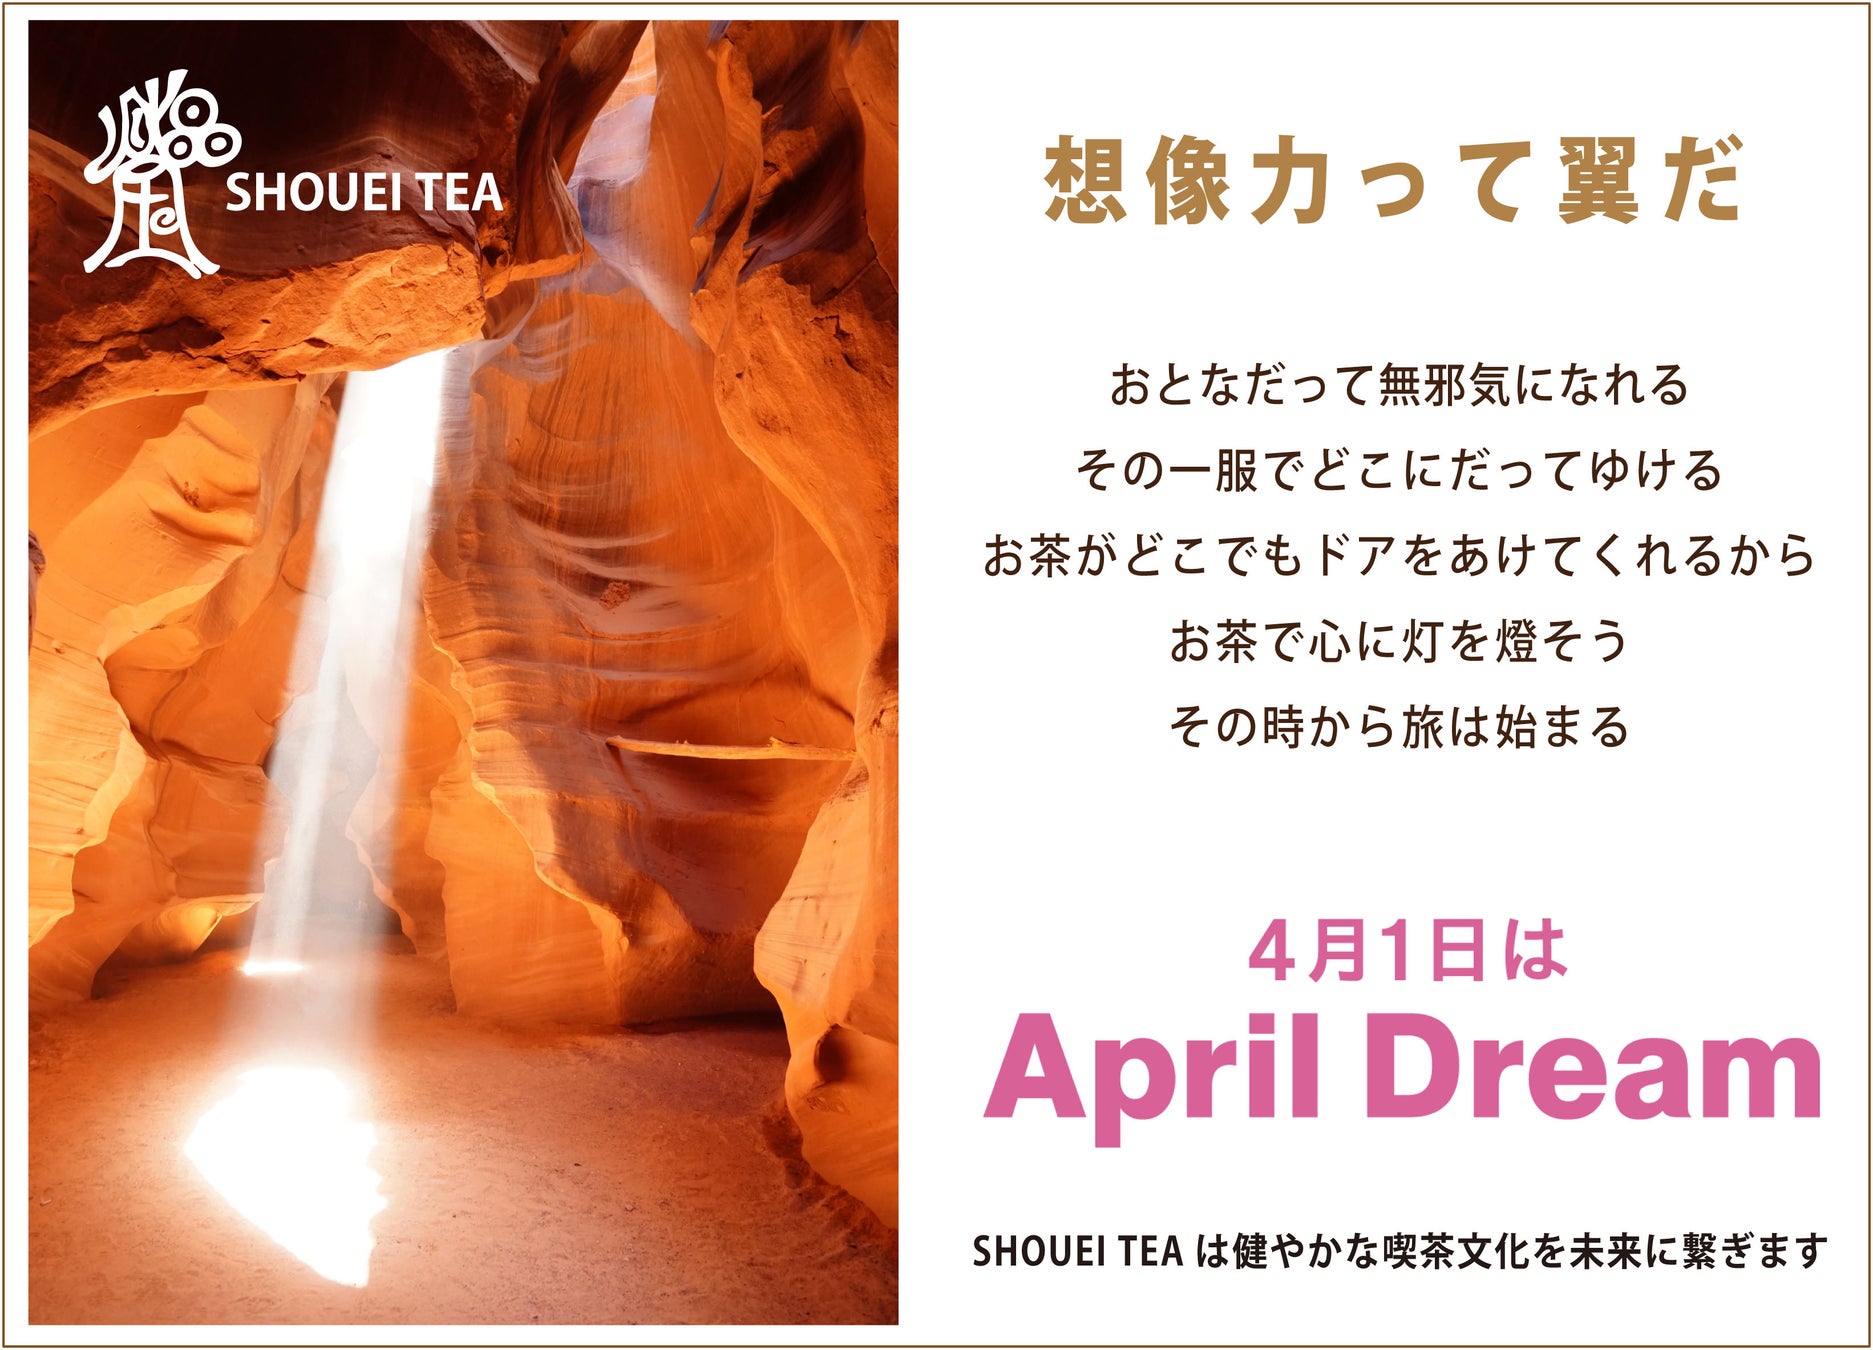 SHOUEI TEAはお茶で想像力を刺激する企業になります。当社は、4月1日を夢を発信する日にしようとするApril Dreamに賛同しています。このプレスリリースは「株式会社晶瑩」の夢です。